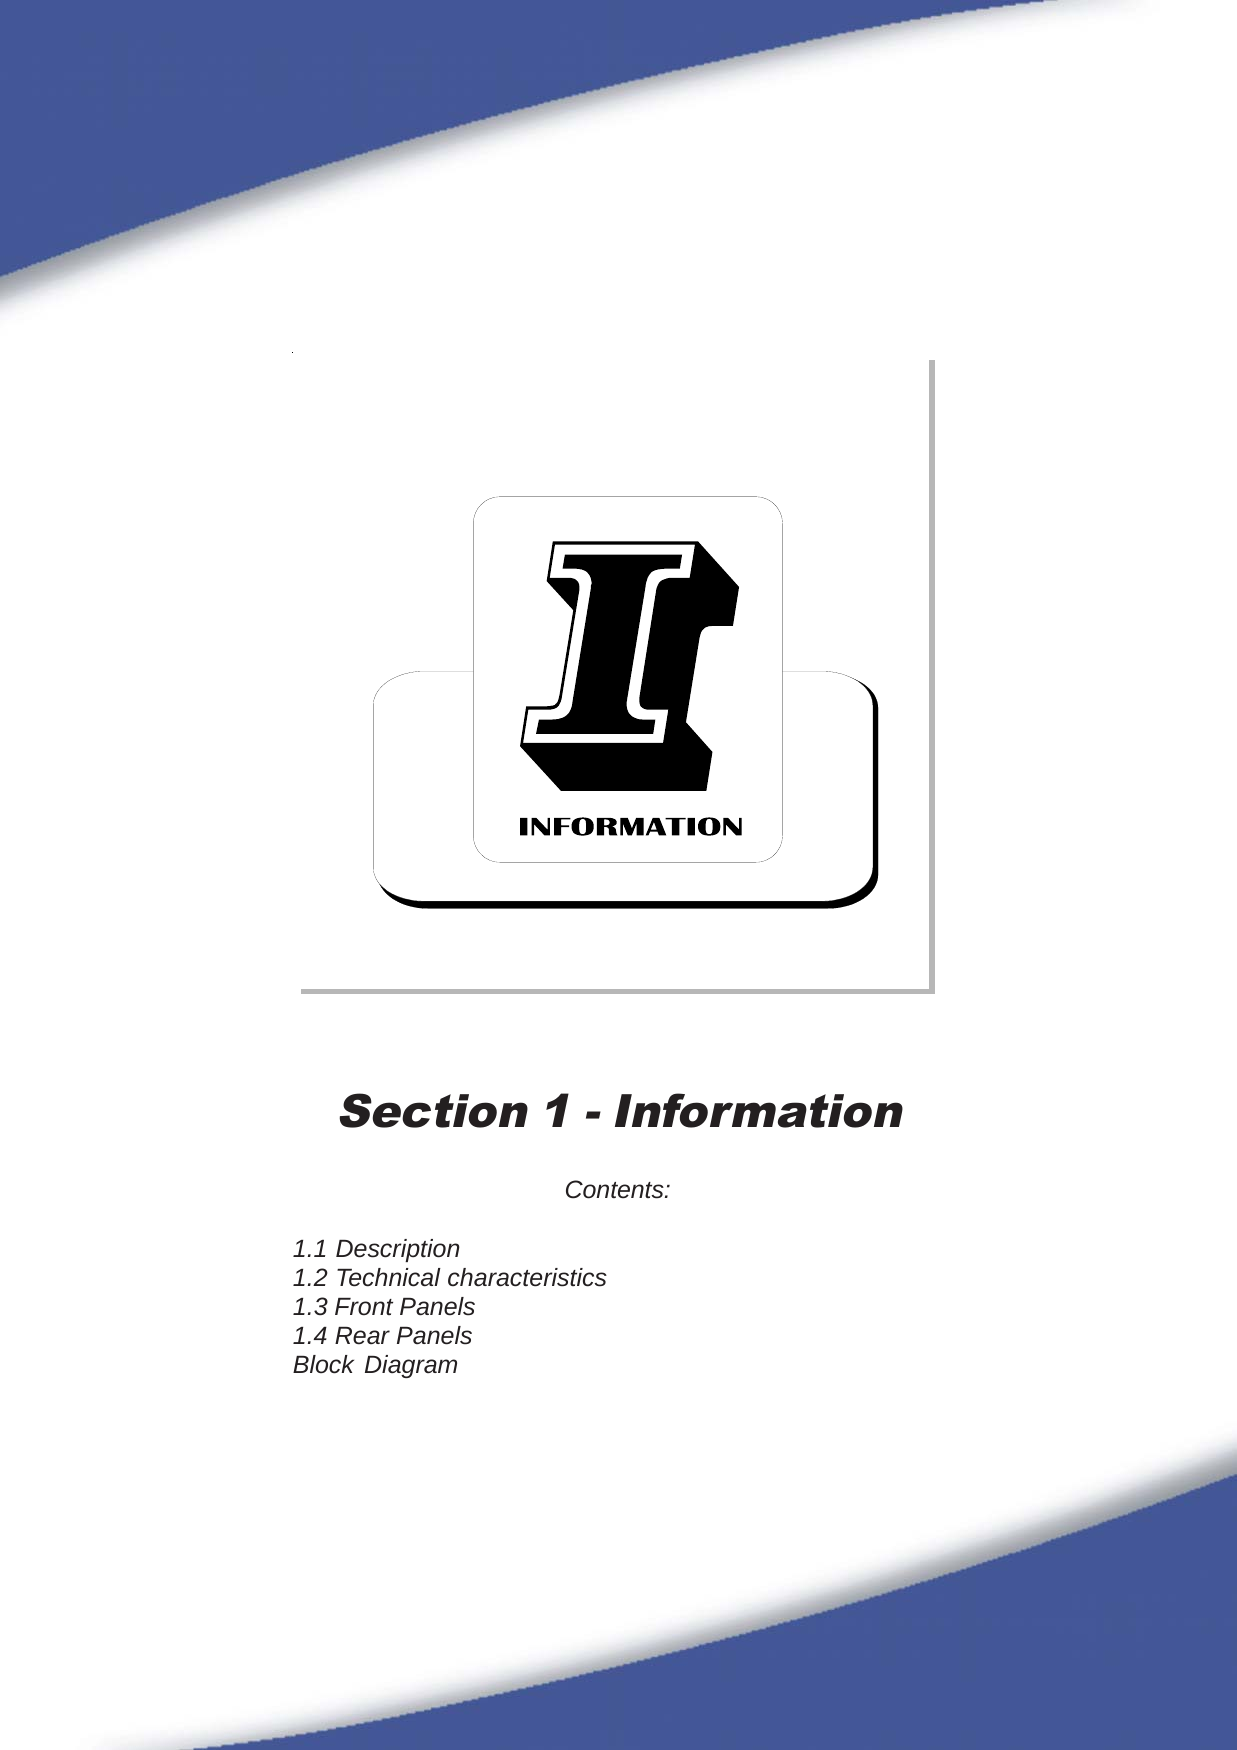 17Section 1 - InformationContents:1.1 Description1.2 Technical characteristics1.3 Front Panels1.4 Rear PanelsBlock Diagram